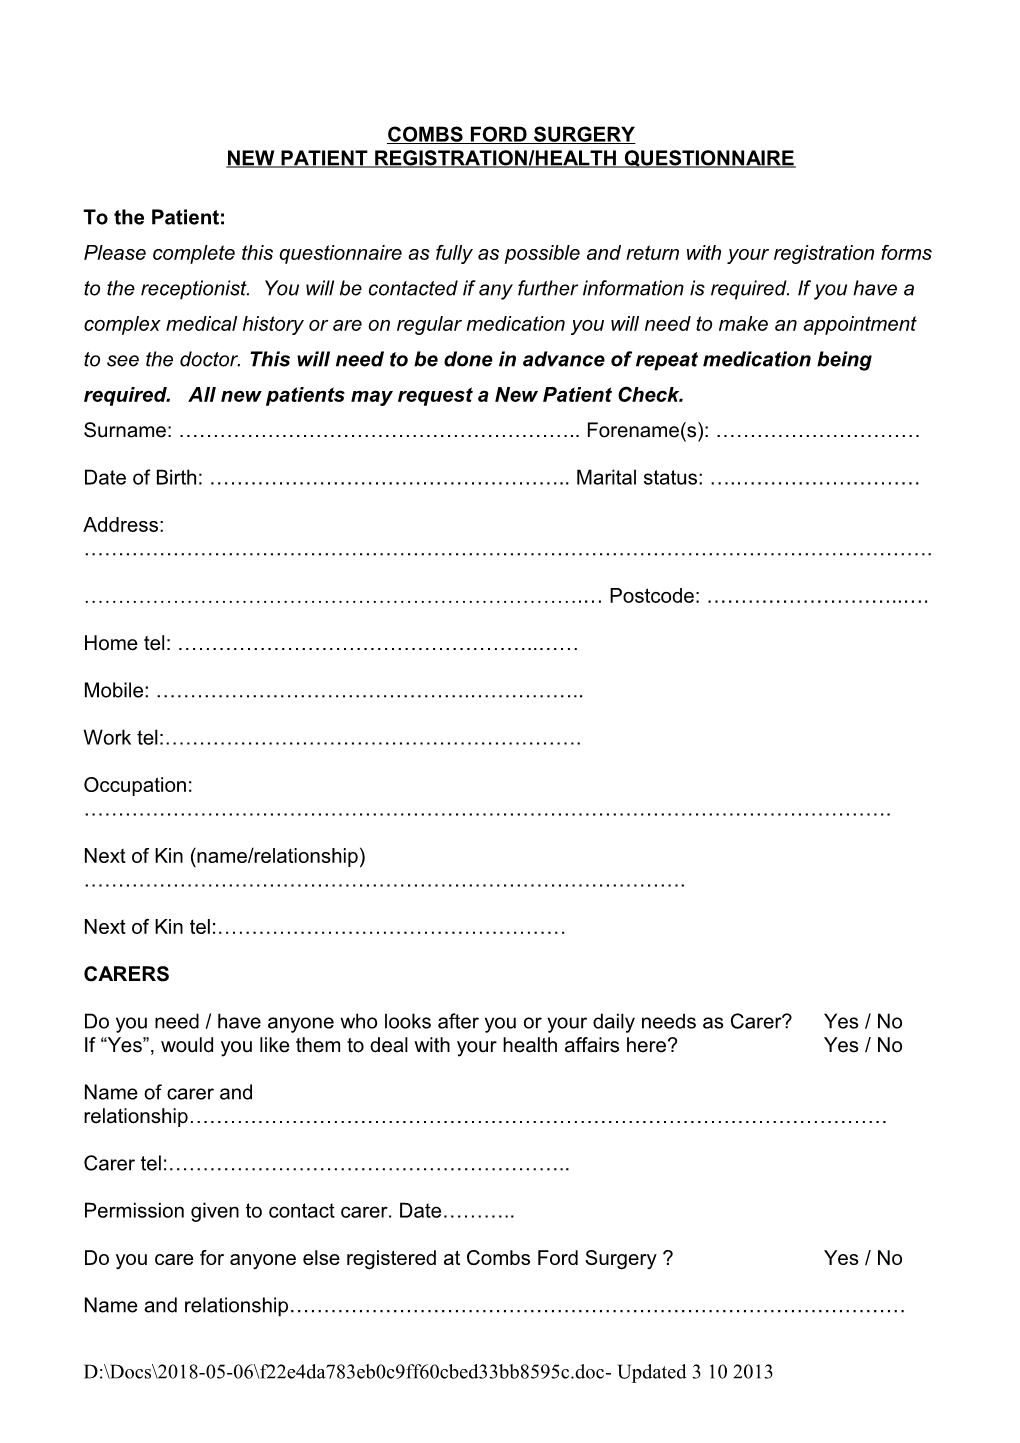 New Patient Registration/Health Questionnaire